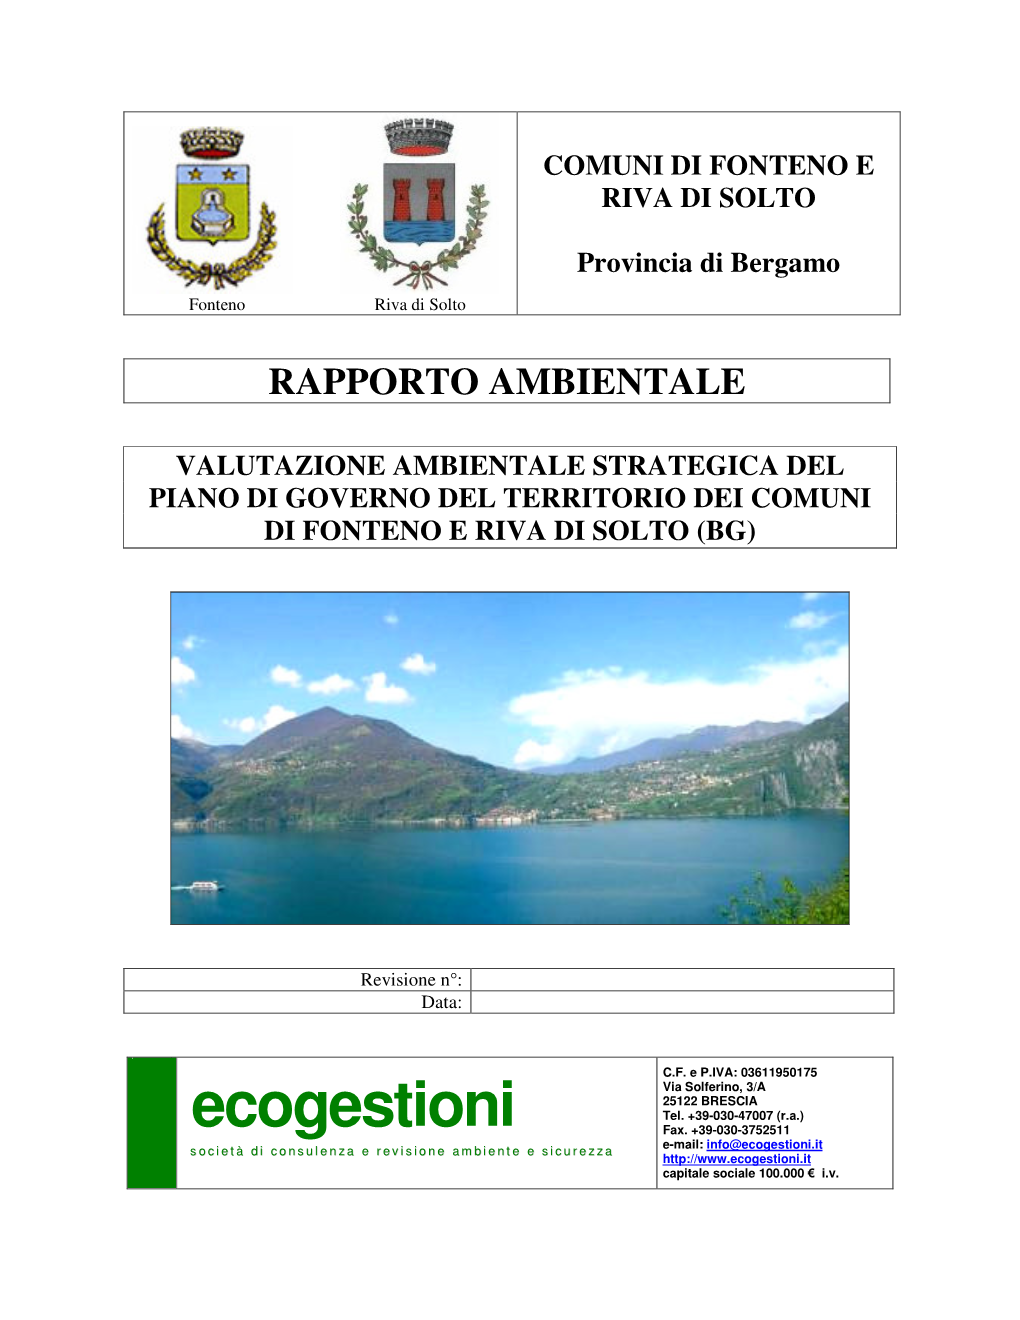 Ecogestioni Fax